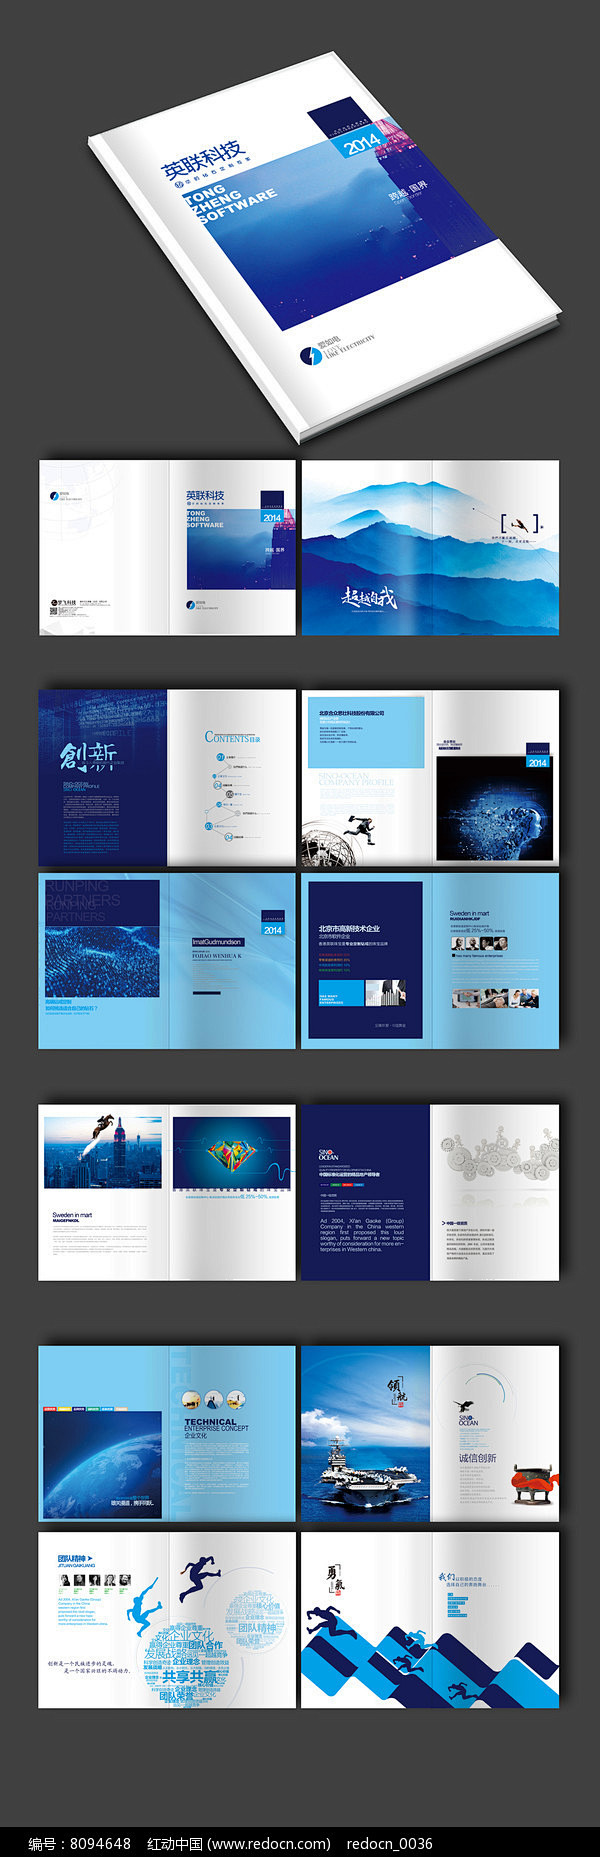 蓝色科技画册设计图片  广告画册 画册设...